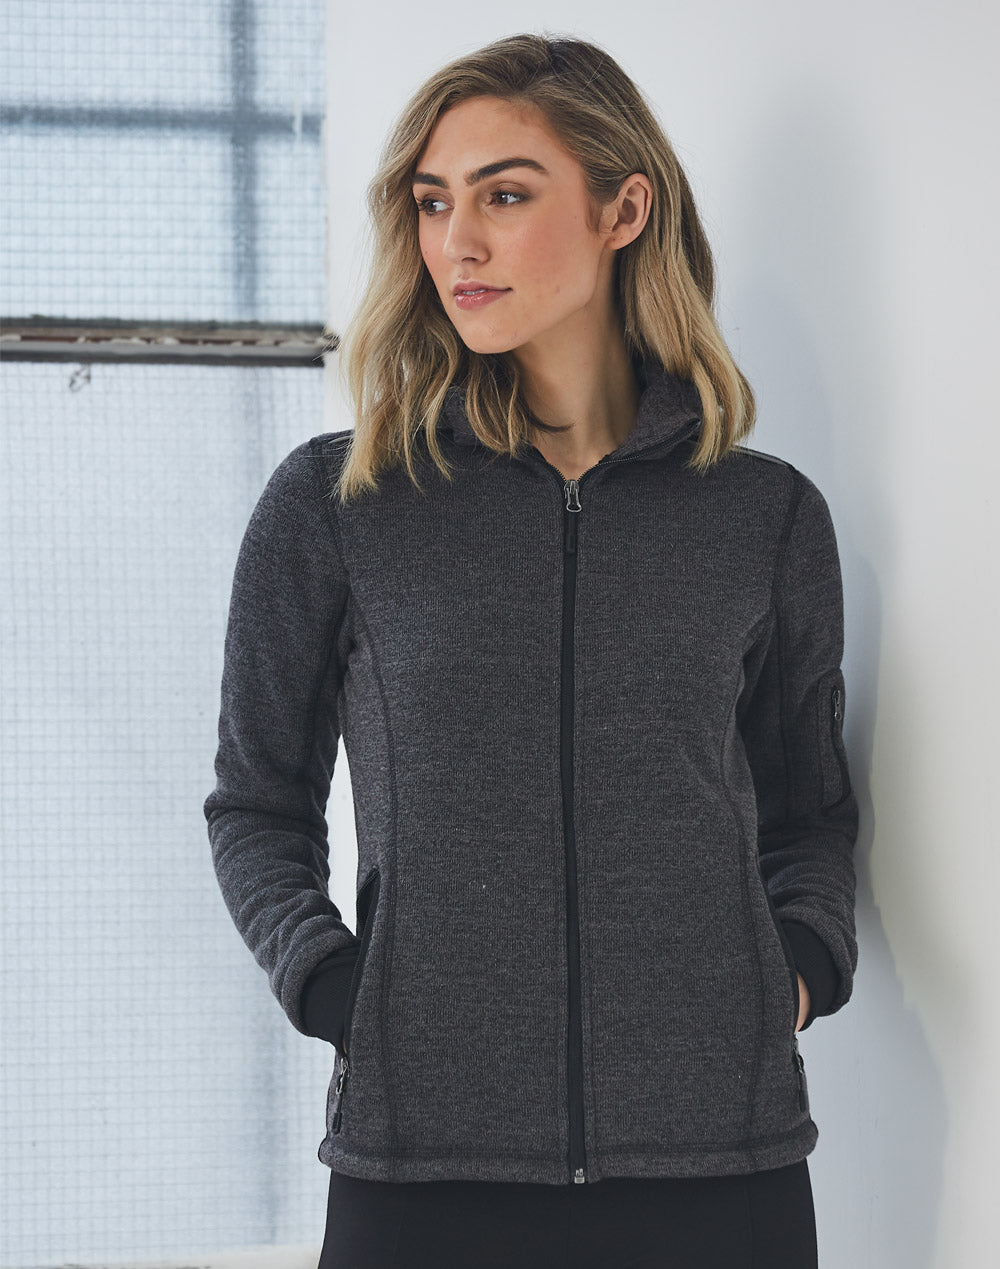 [JK42] Ladies' Heather Bonded Fleece Jacket